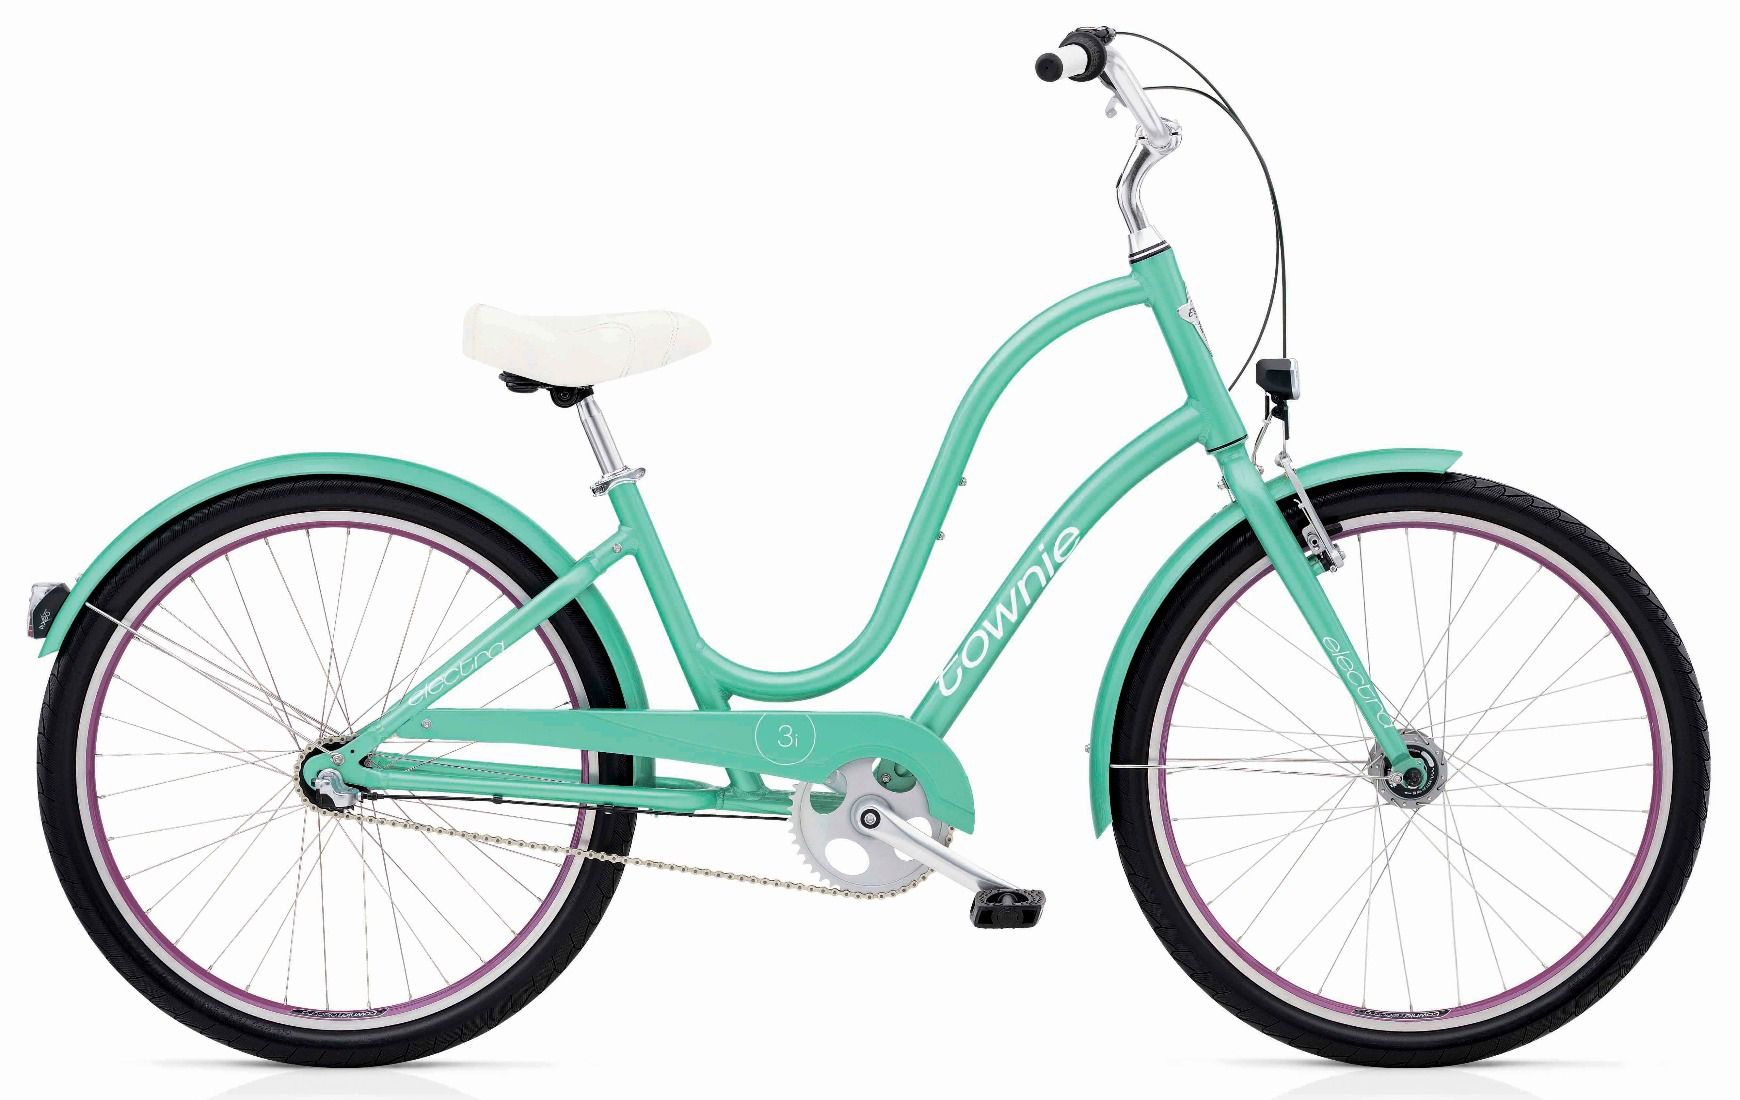  Отзывы о Женском велосипеде Electra Townie Original 3i EQ 2019